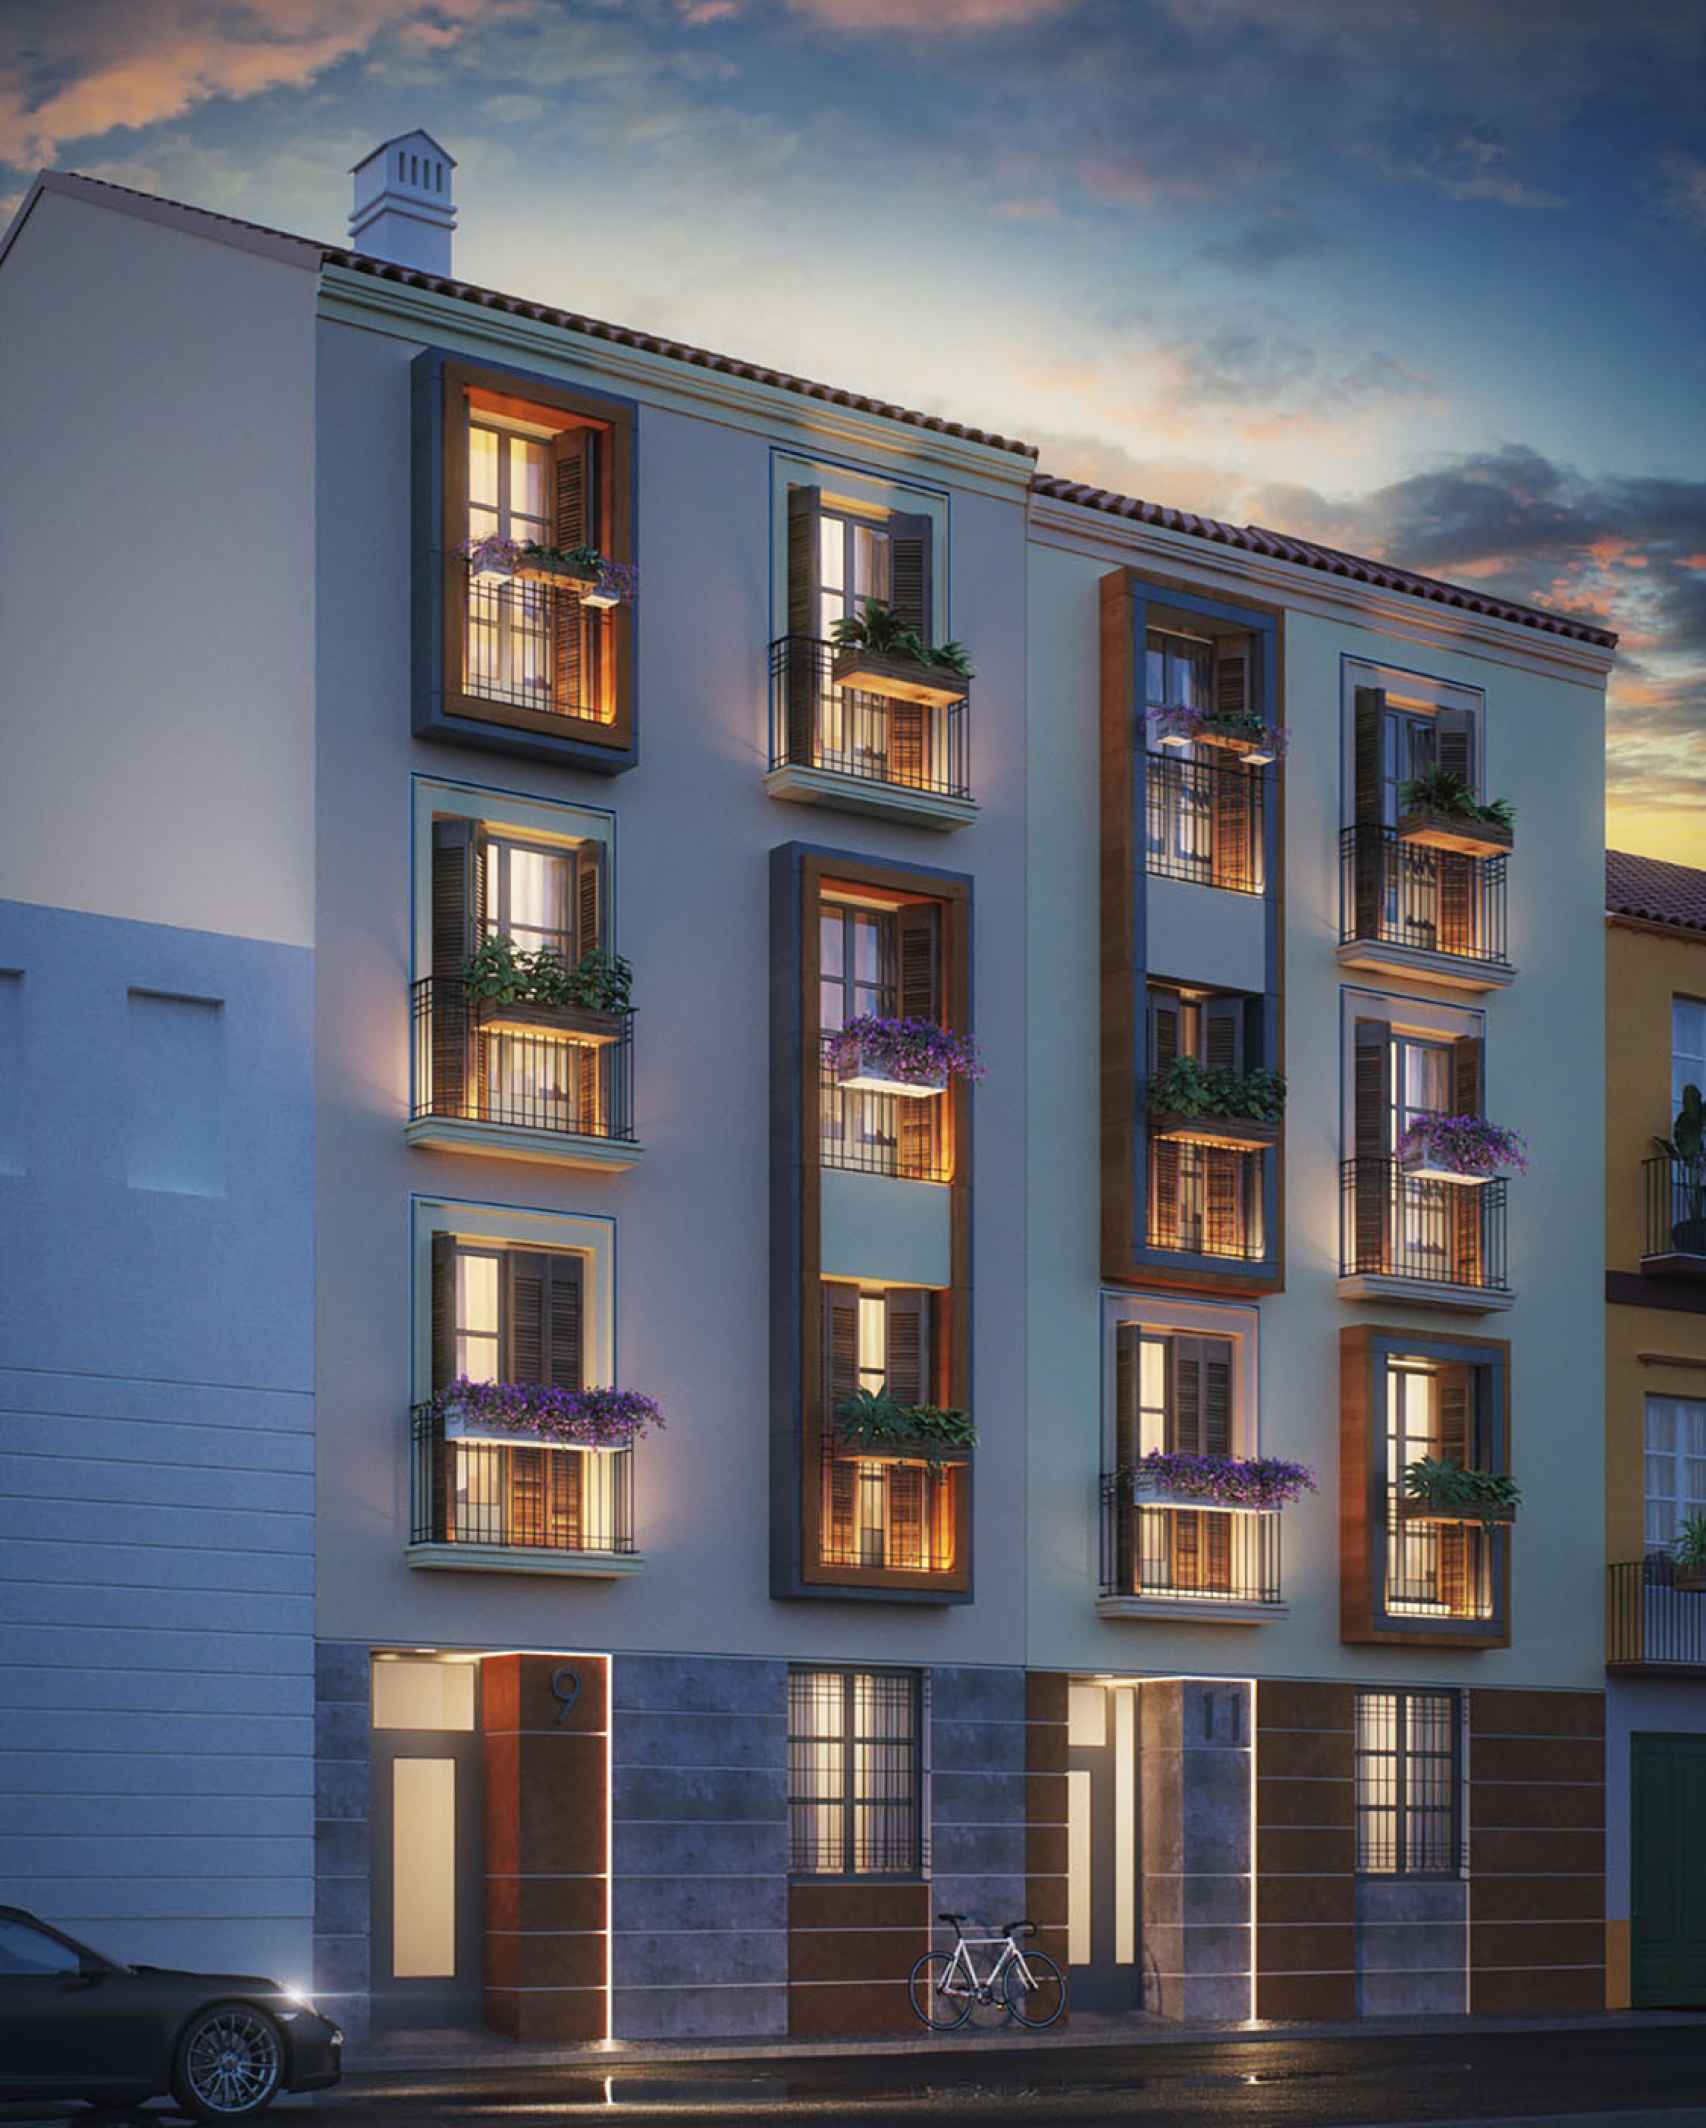 Diseño del edificio de apartamentos turísticos de la calle Frailes.